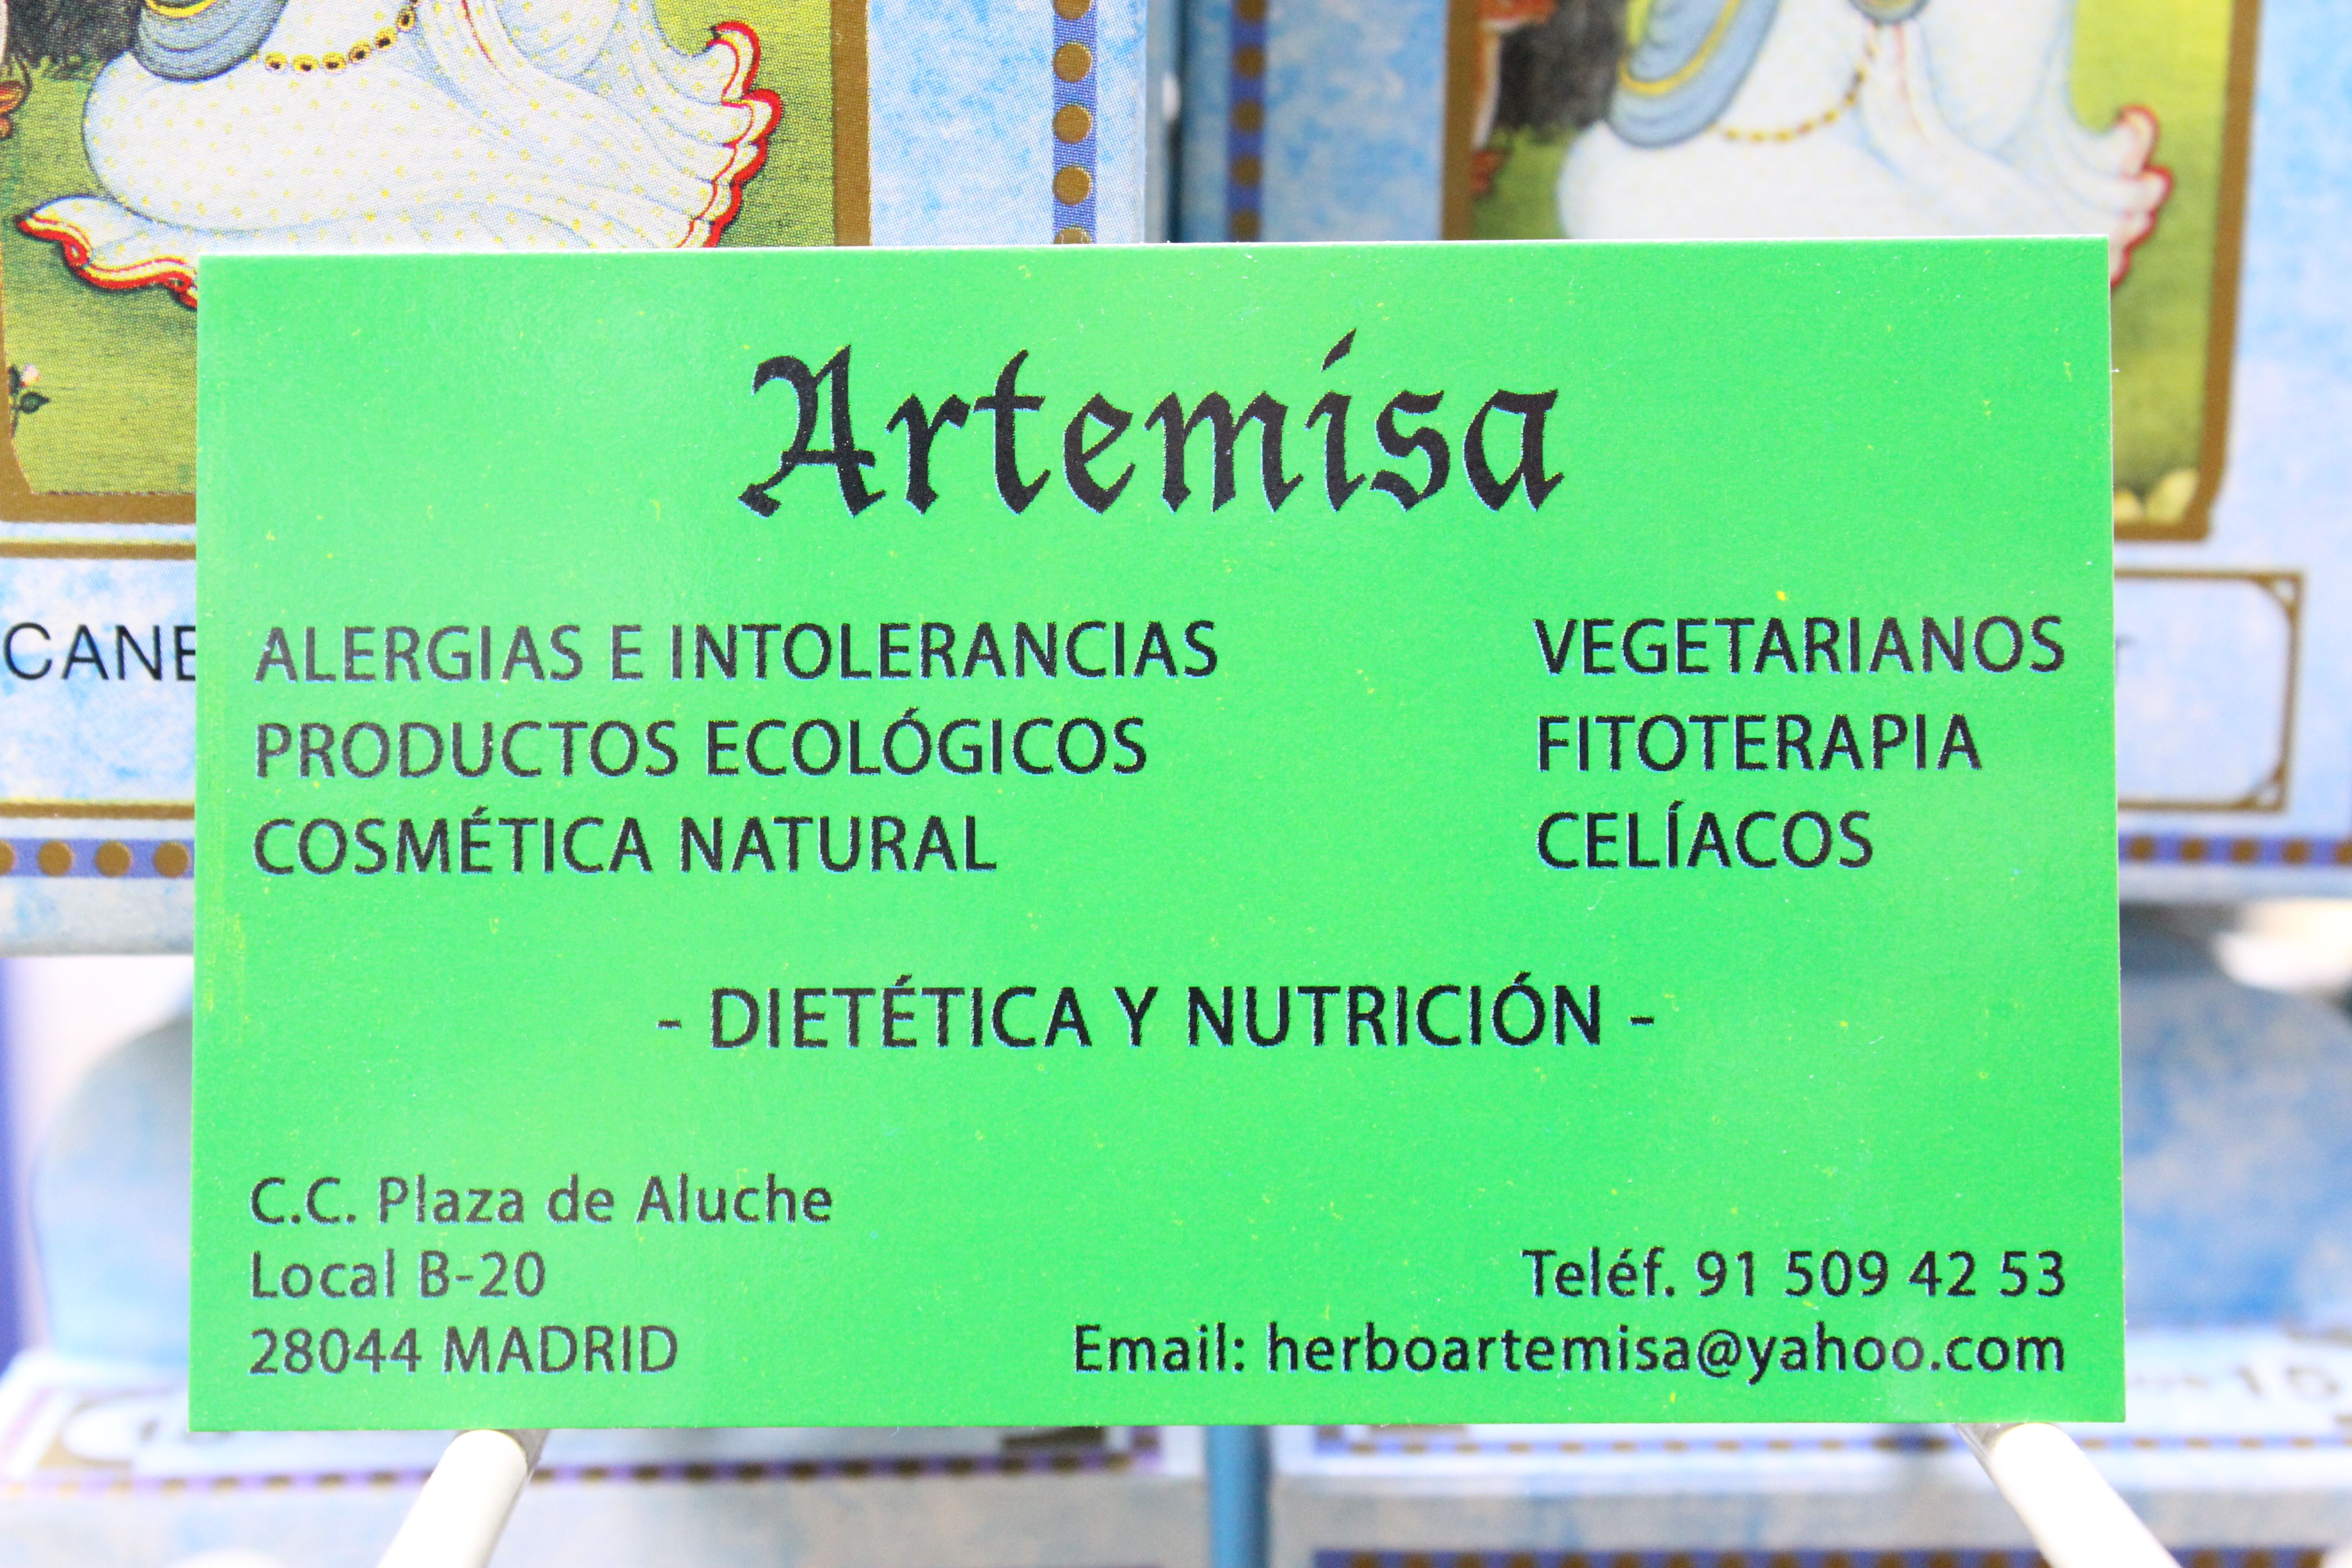 Foto 5 de Herbolarios y dietética en  | ARTEMISA